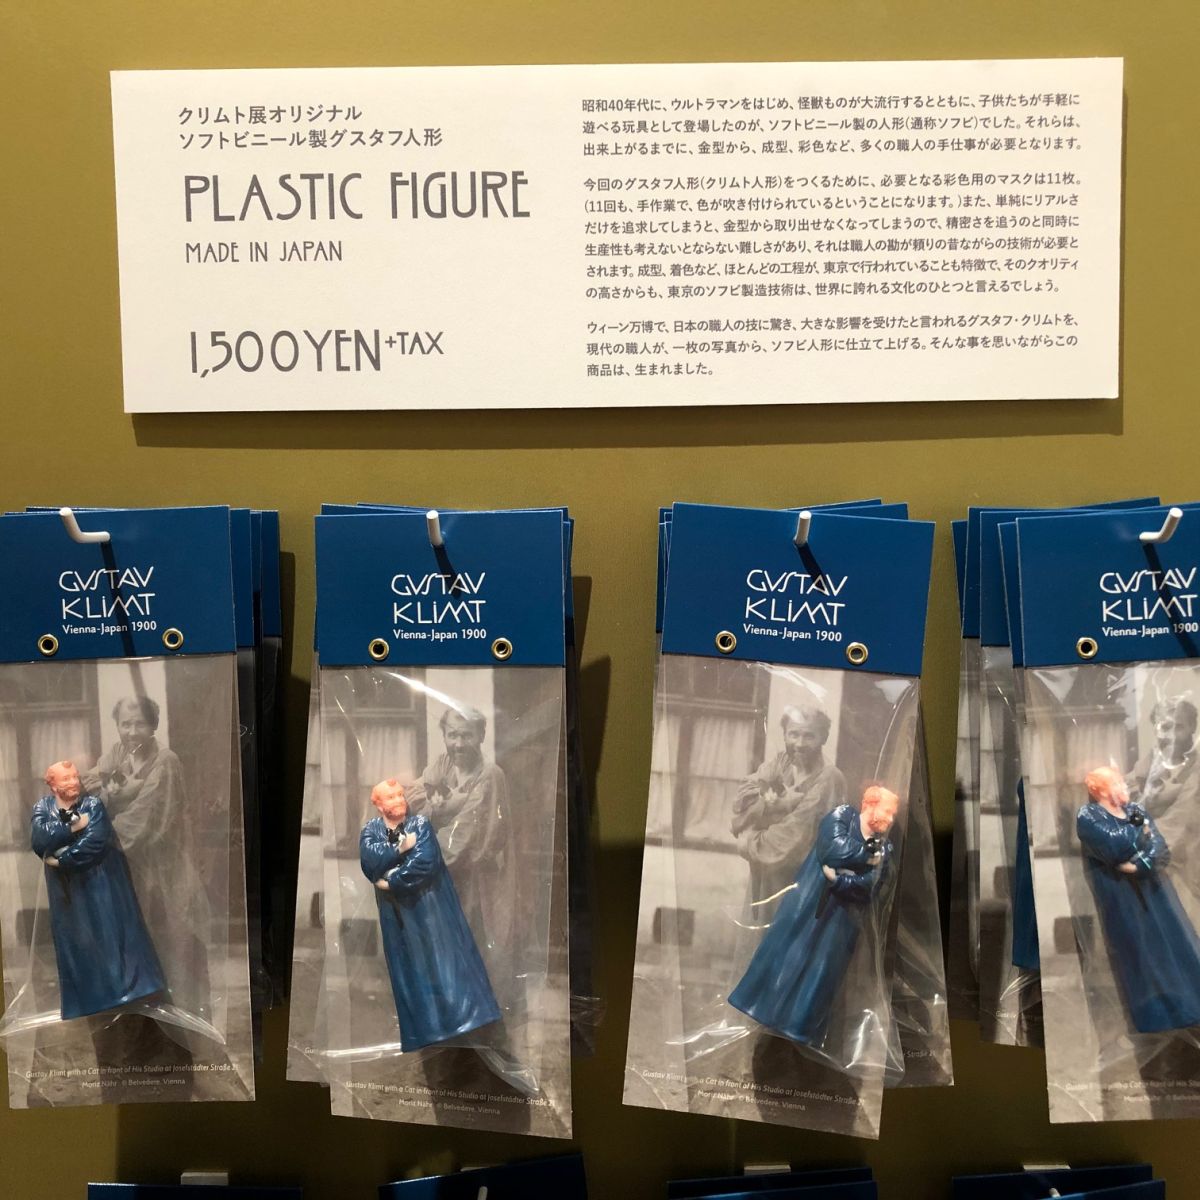 【上野】クリムト展・特設ショップでグッズ散歩 - 『グスタフ人形』と歩くのアイキャッチ画像